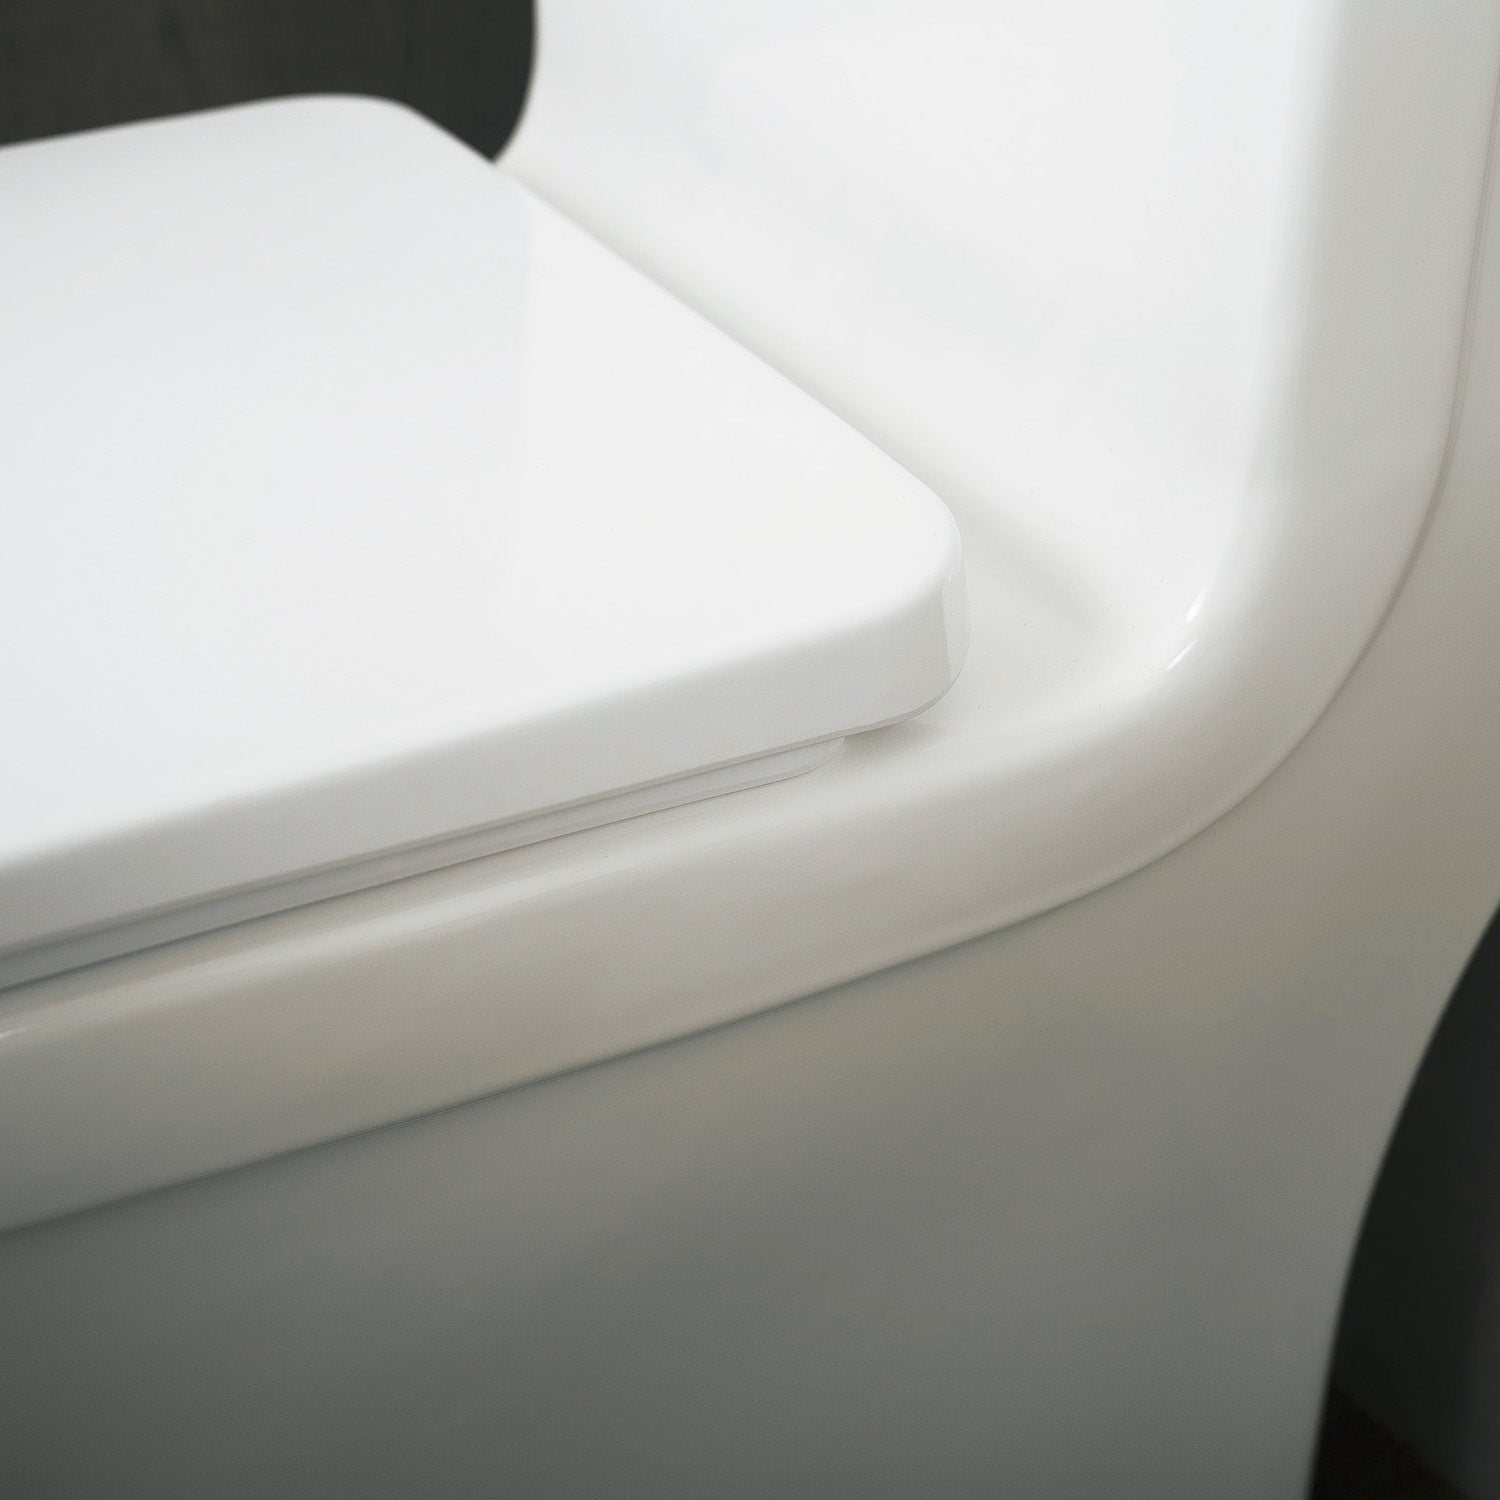 DAX Inodoro cuadrado de una pieza con asiento de cierre suave y doble descarga de alta eficiencia, porcelana, acabado blanco, altura 28-3/4 pulgadas (BSN-835)